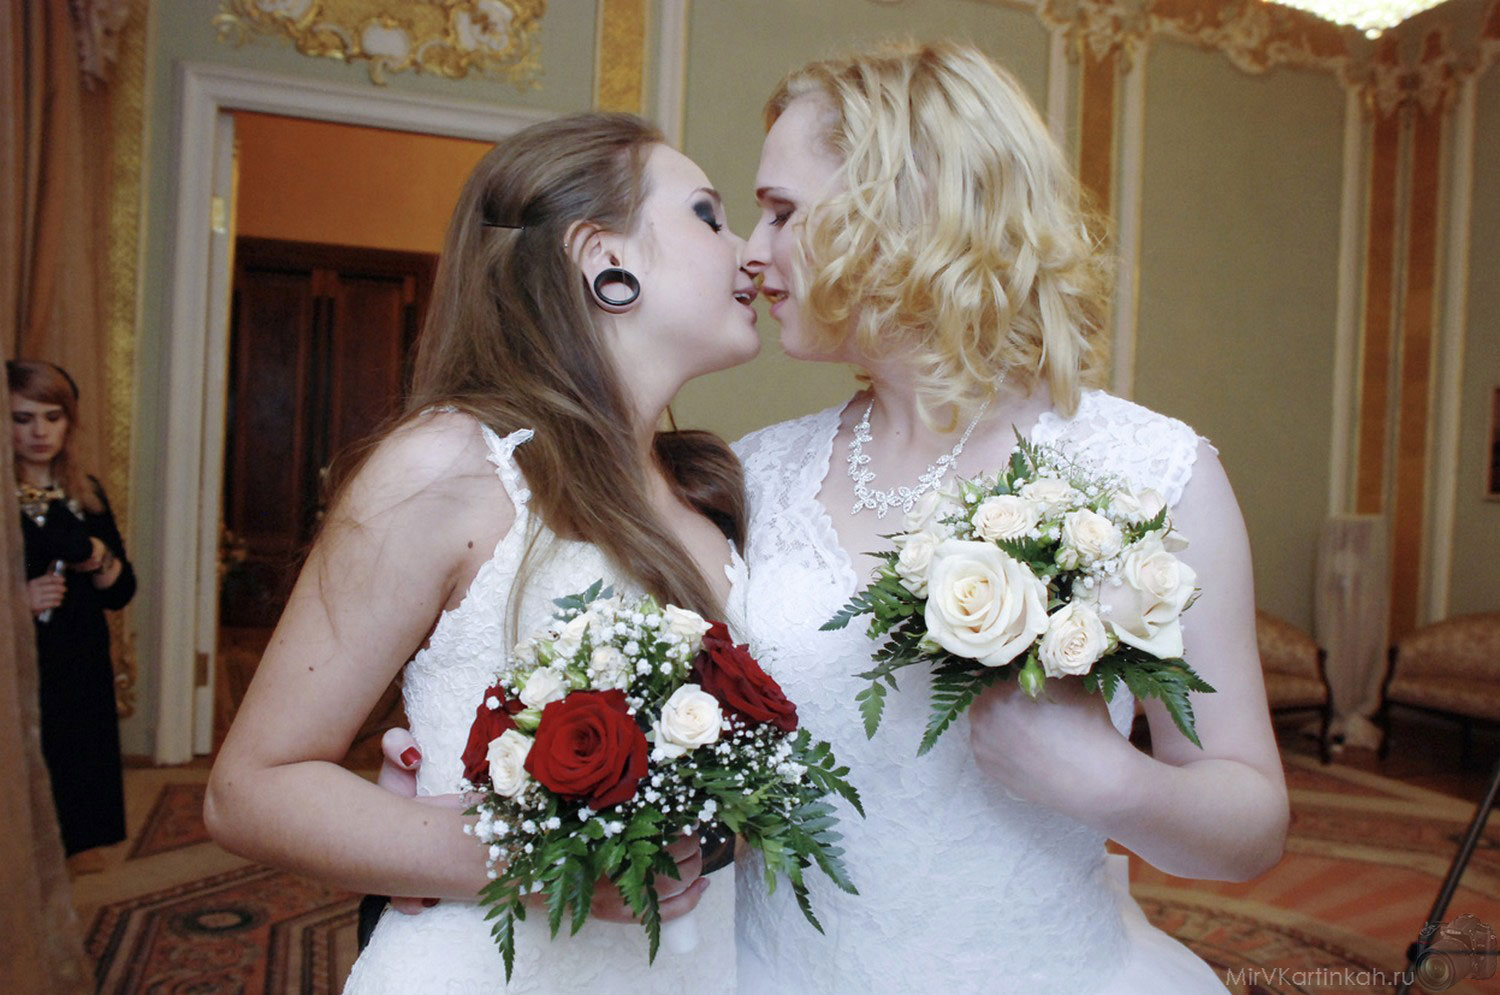 Лесбийская свадьба